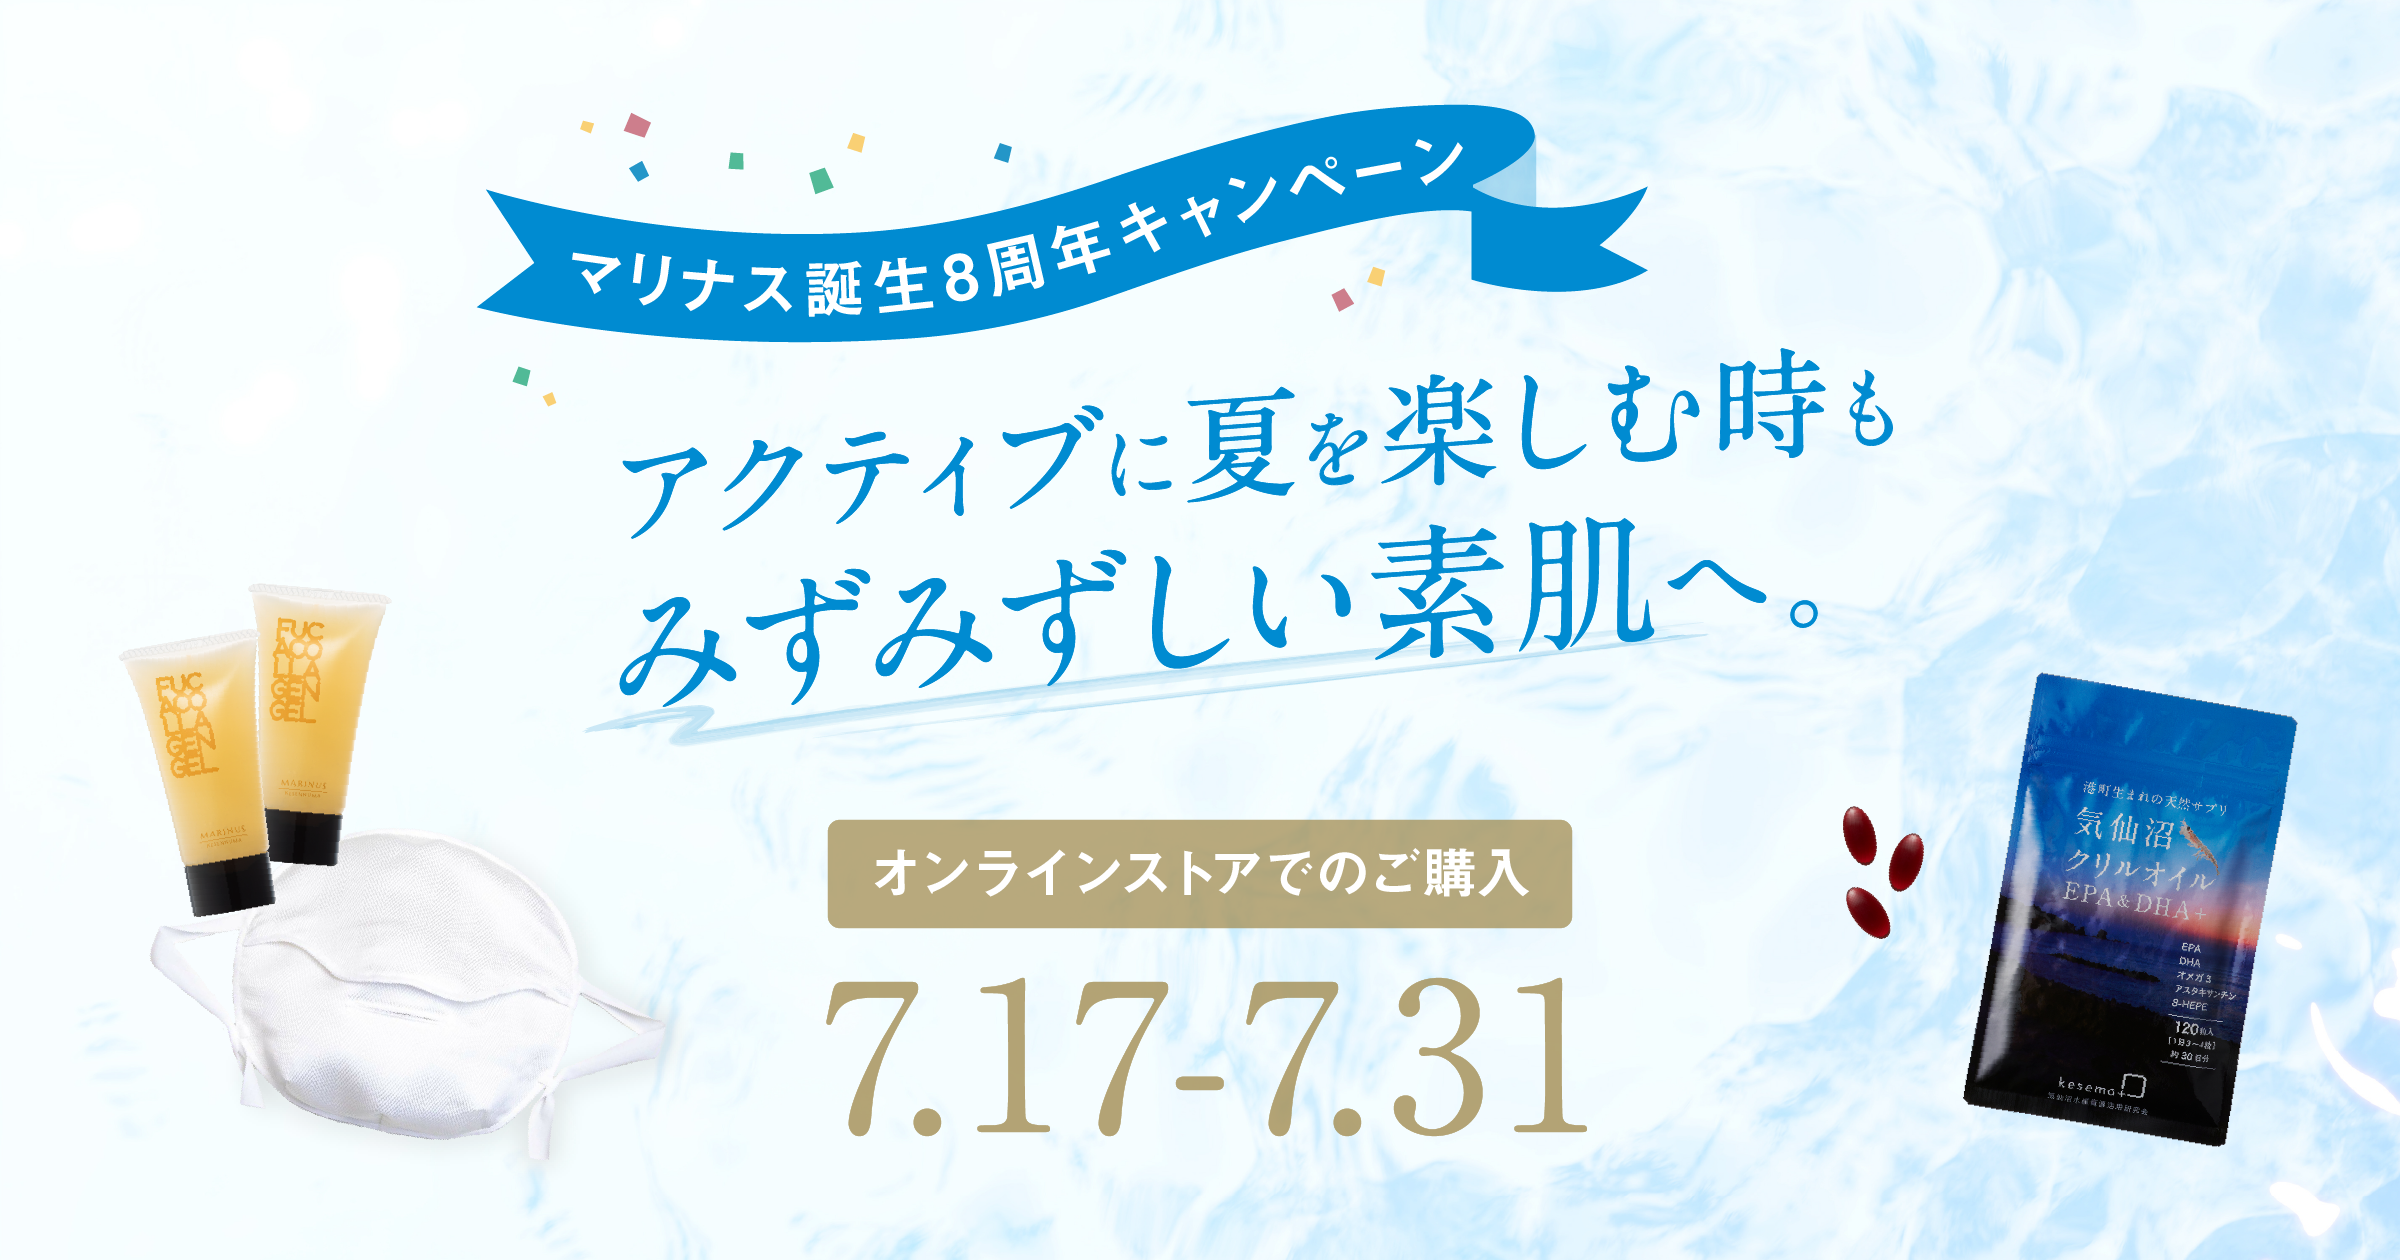 マリナス誕生8周年感謝キャンペーン【オンラインストア】